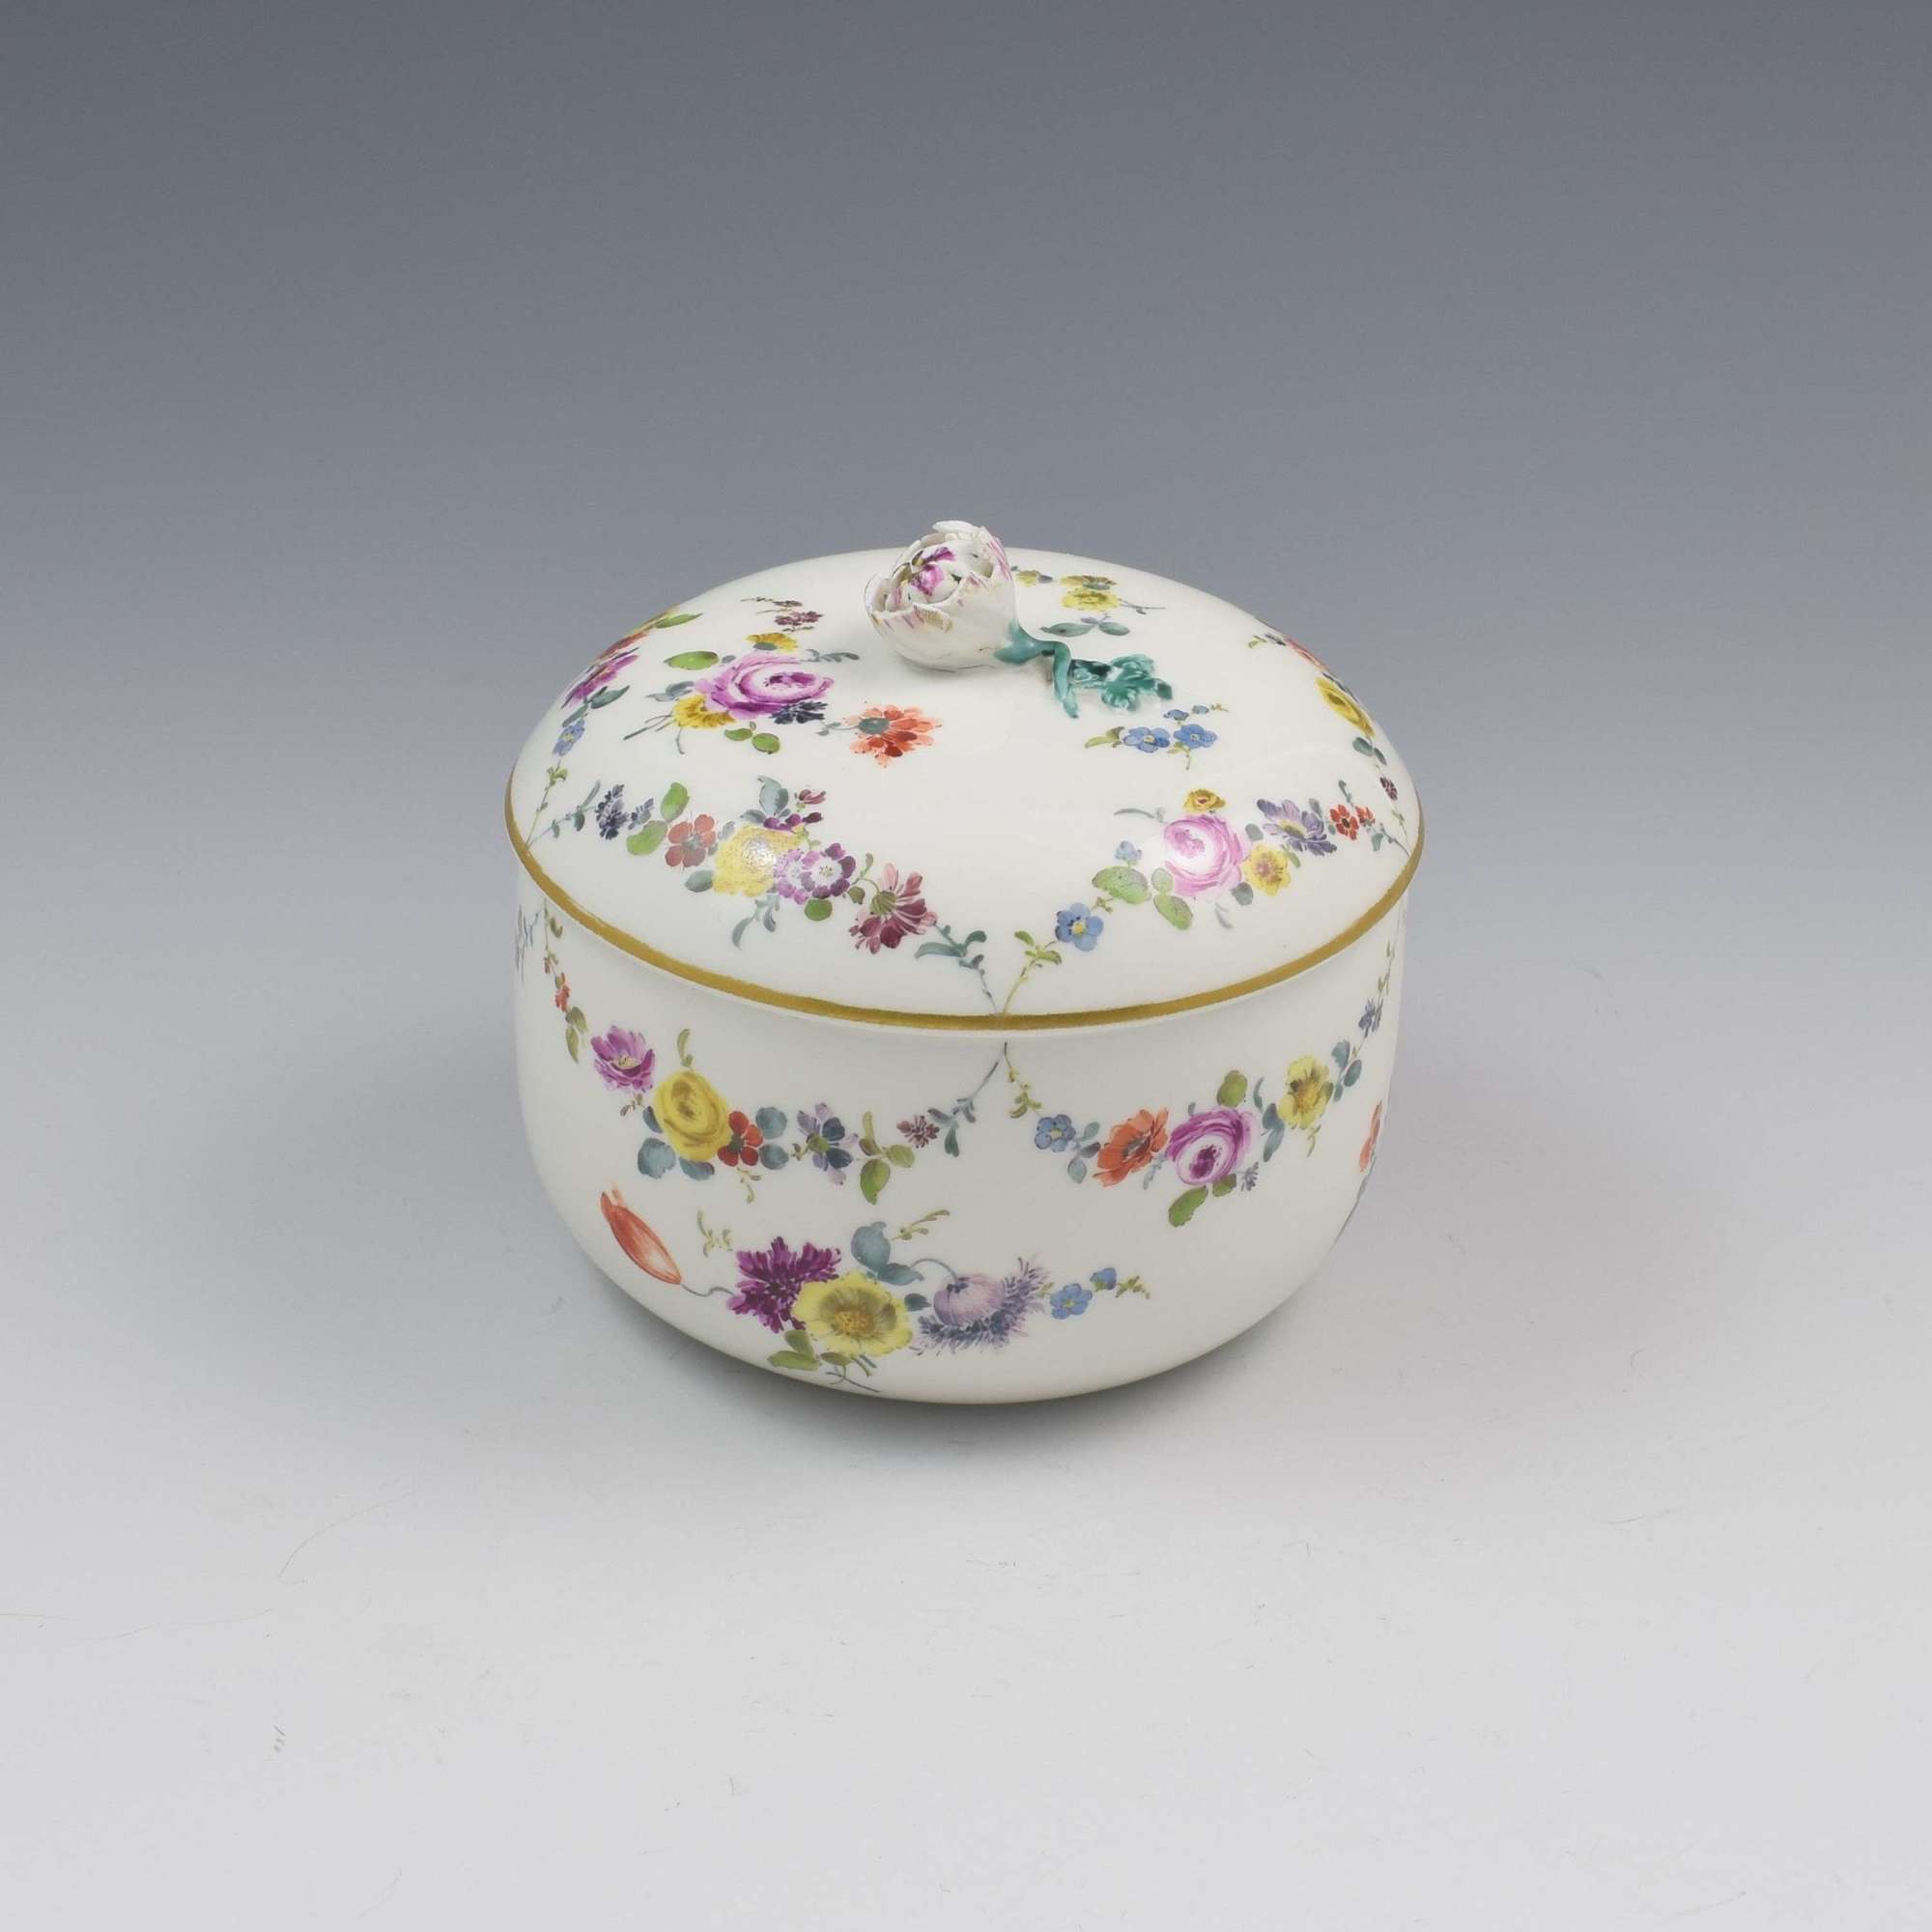 18th Century Meissen Porcelain Sugar Bowl & Cover c.1763-1774